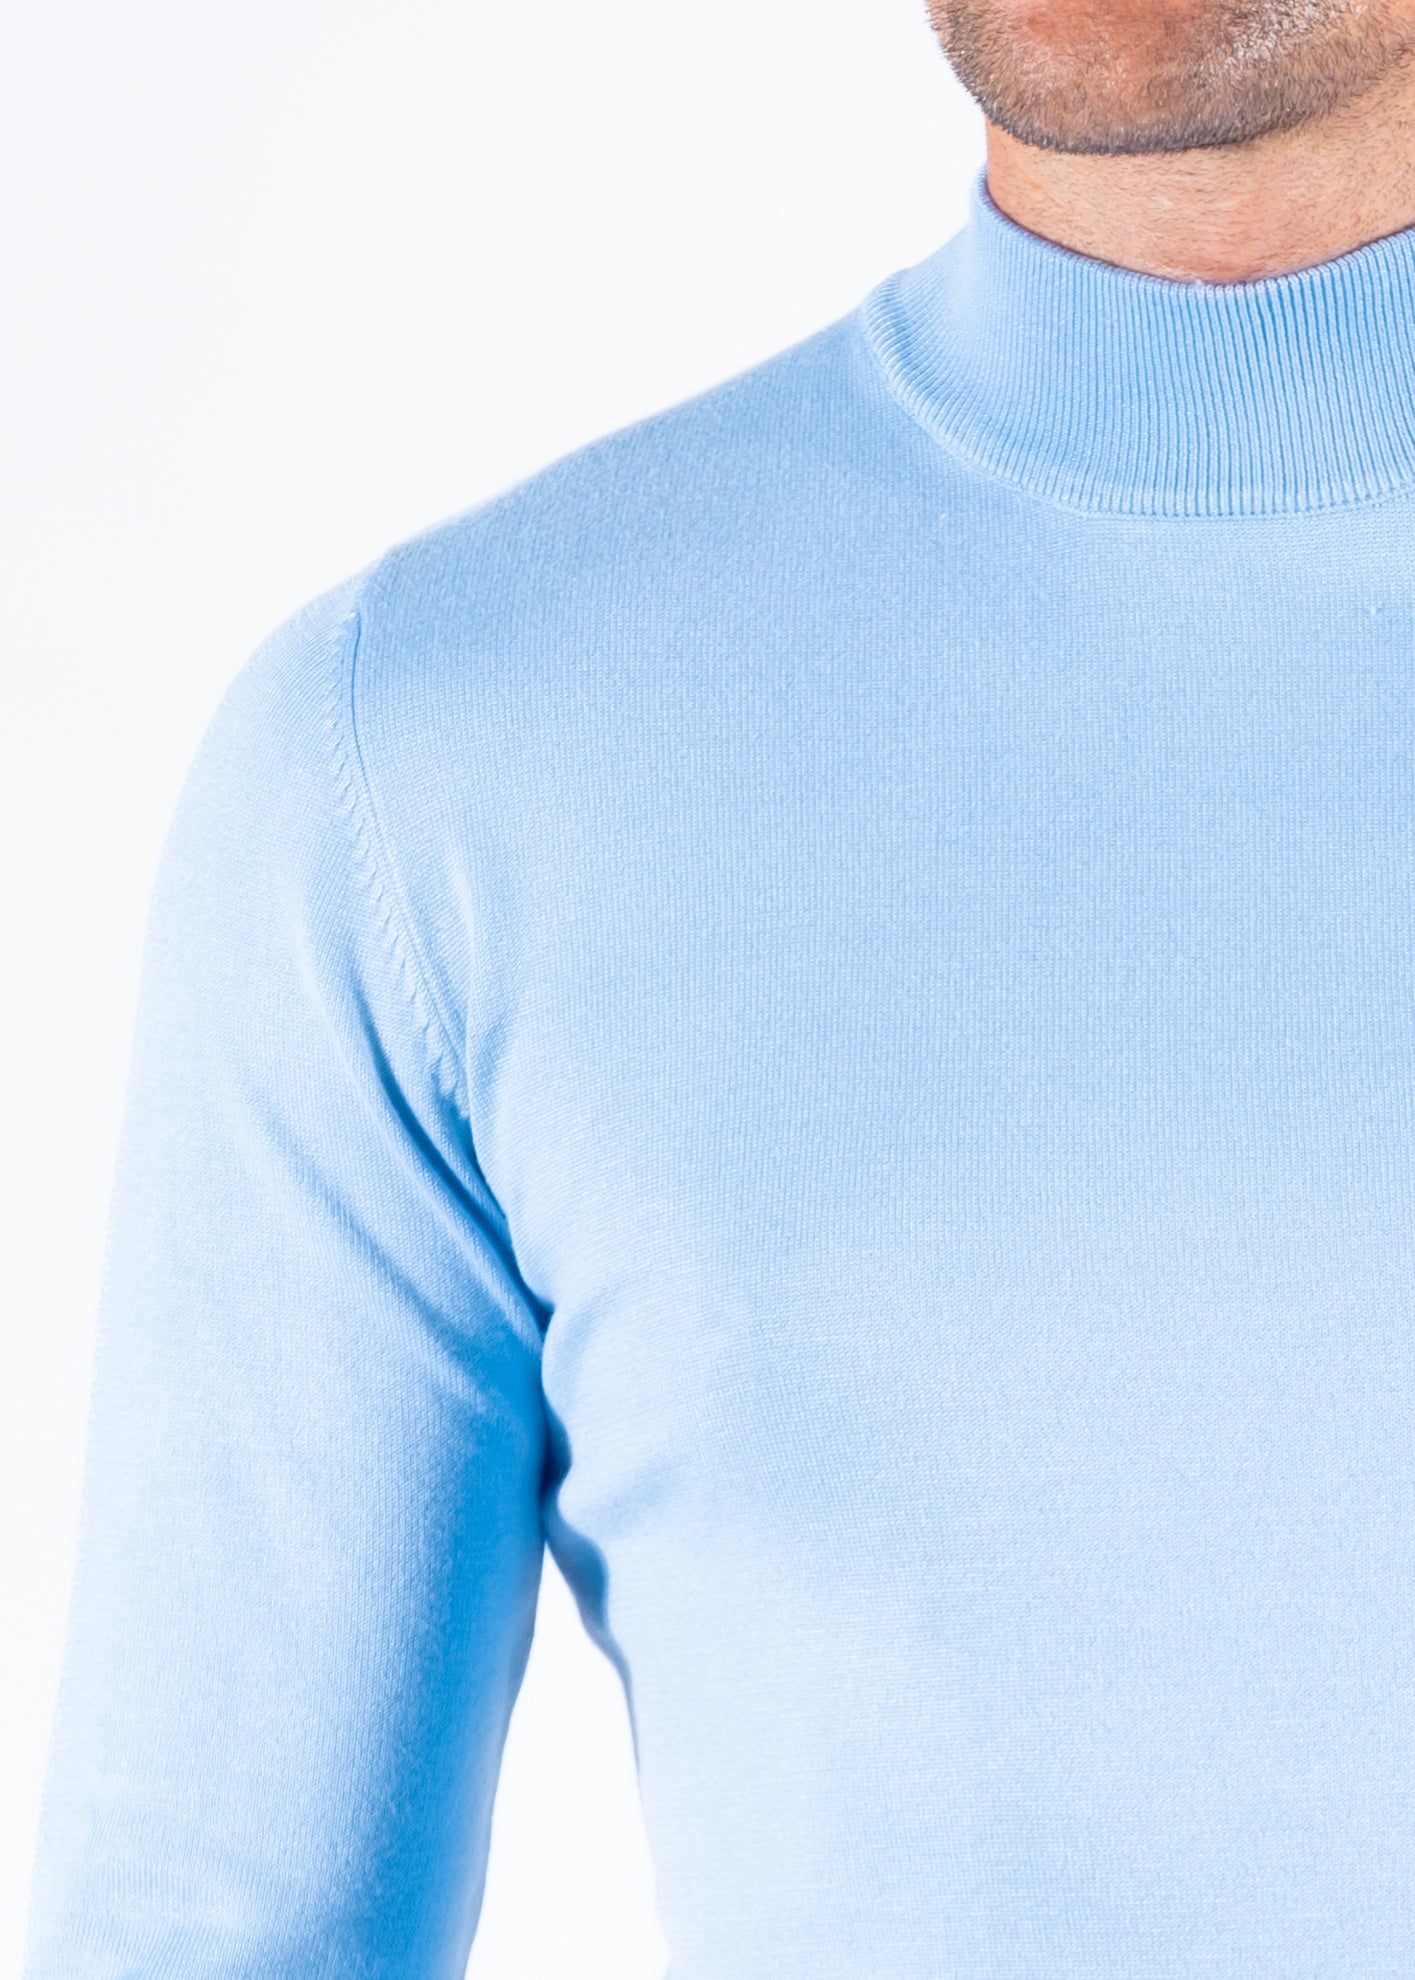 Turtleneck knitwear long sleeve light blue